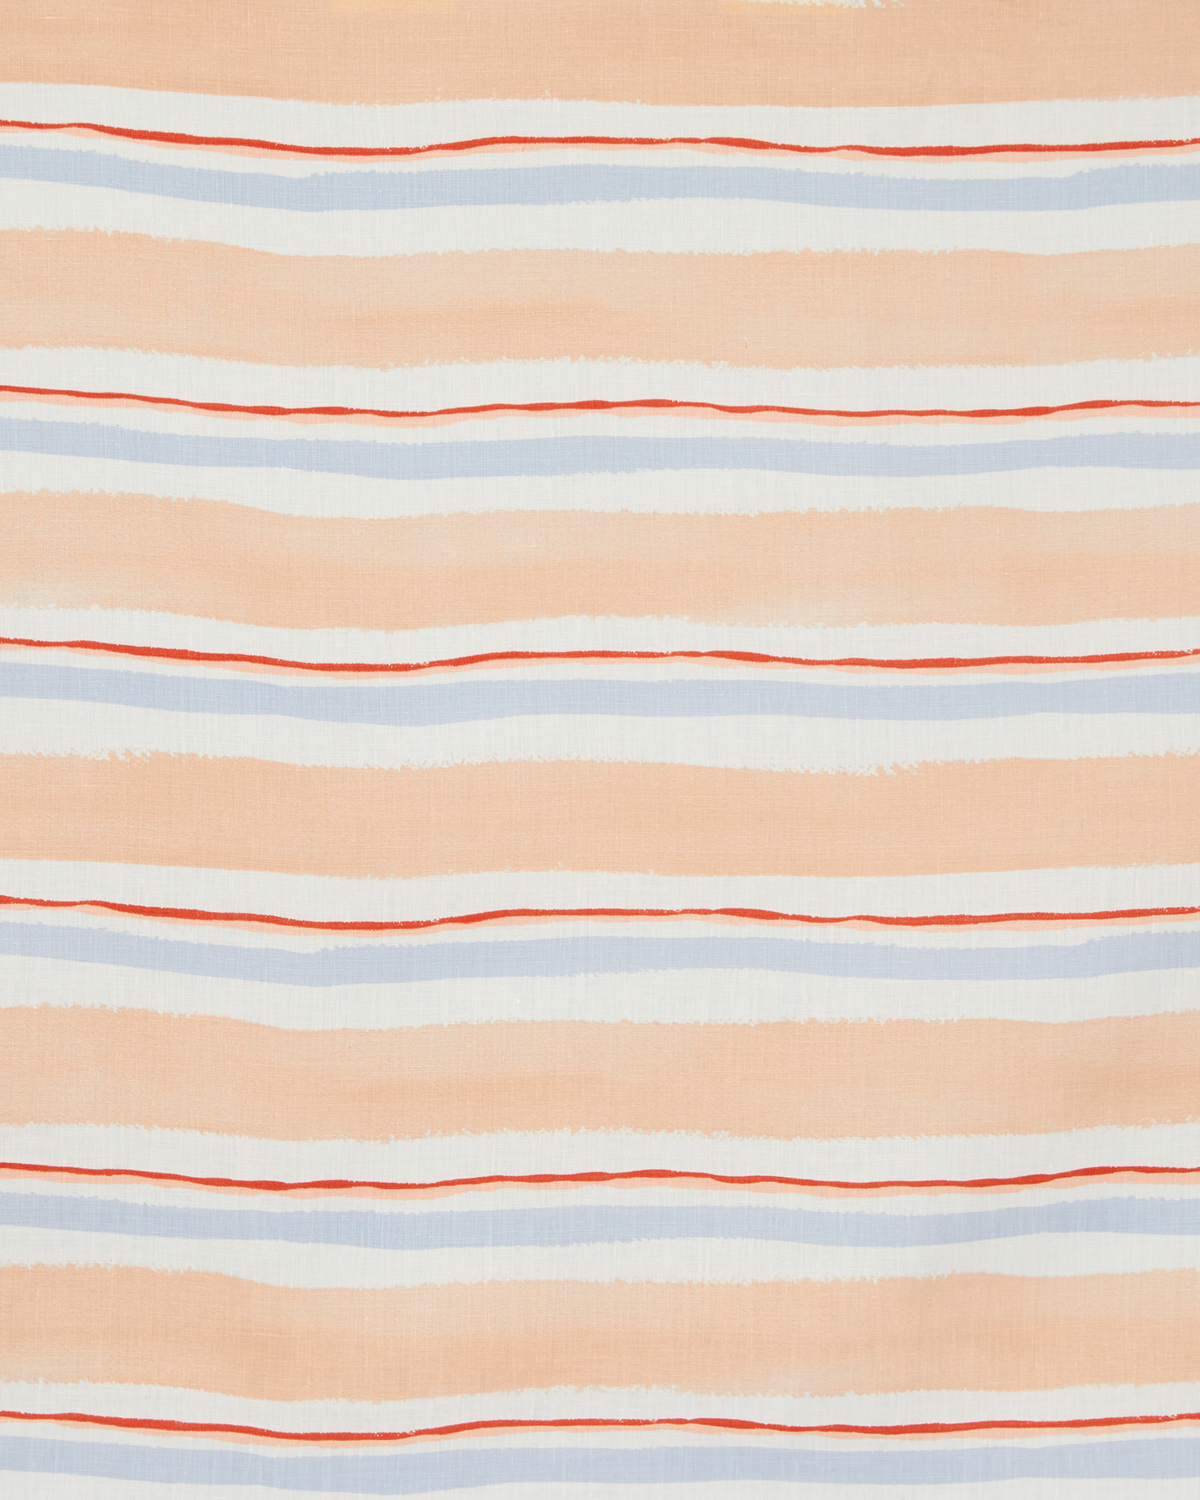 Summer Stripe Fabric in Multi Blush